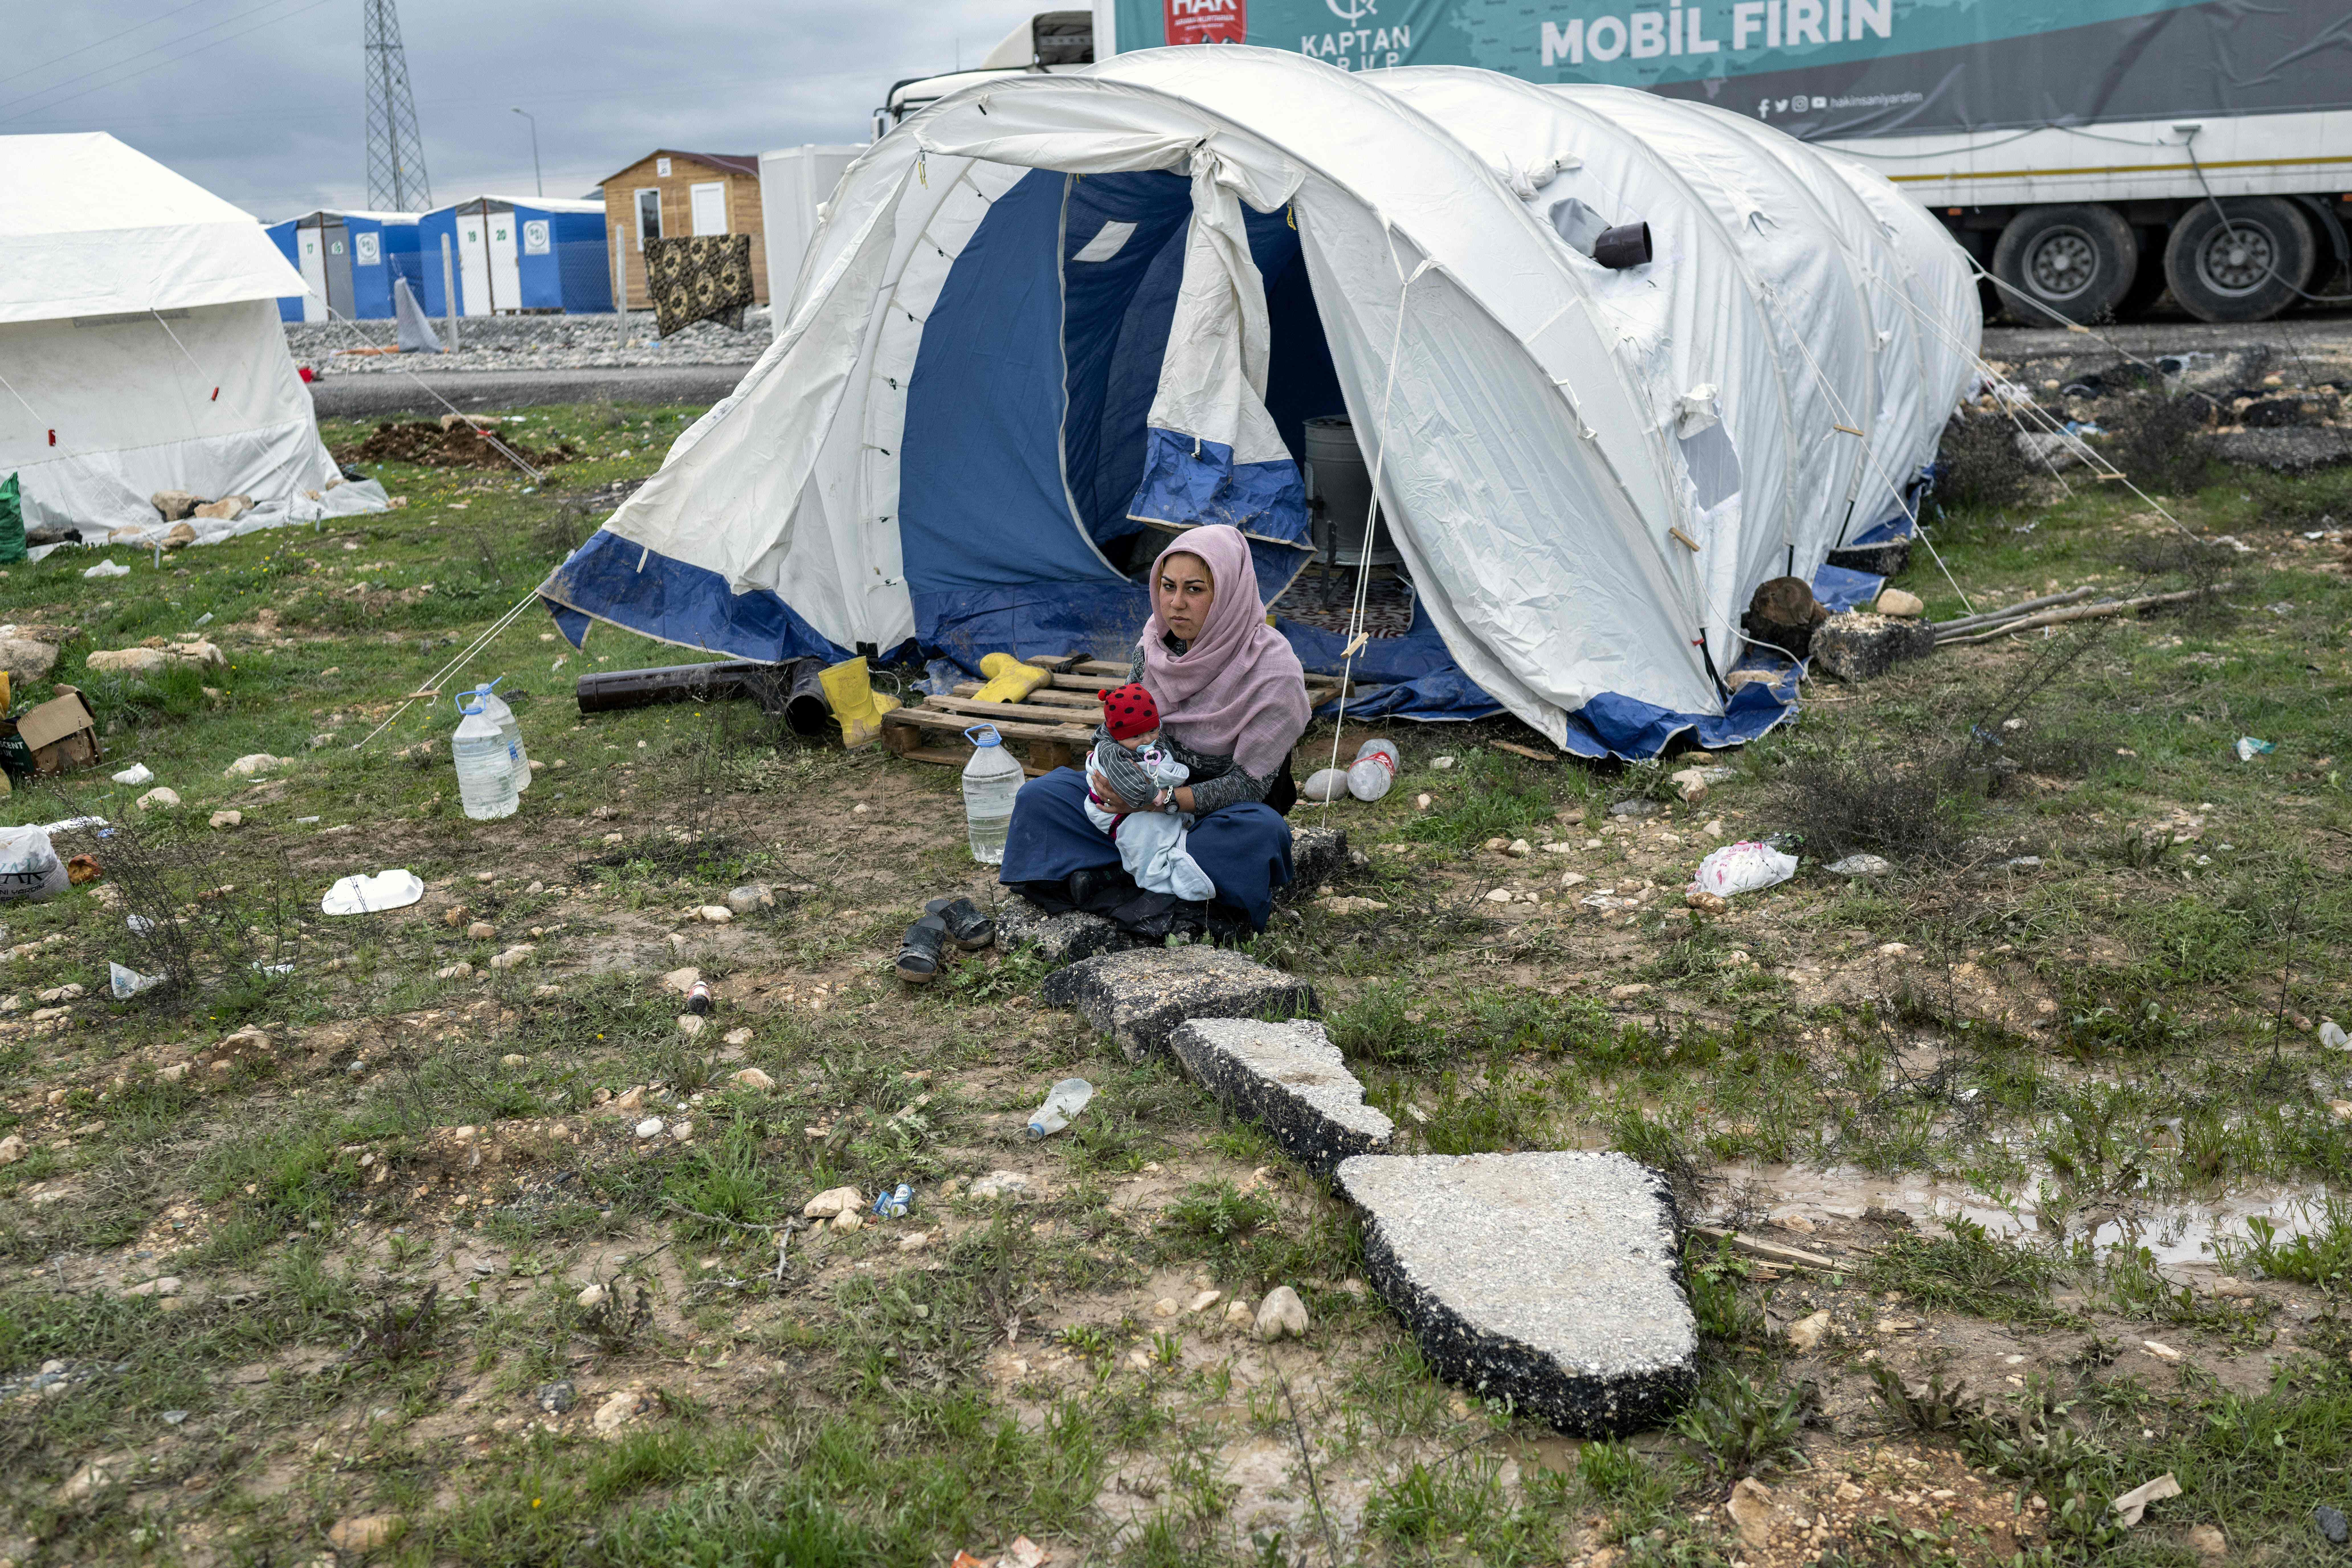 지진으로 초토화된 튀르키예 남동부 지역에 폭우가 내린 뒤인 지난 26일(현지시간) 아드야만의 이재민 텐트촌에 한 쿠르드족 여성이 신생아를 품에 안은 채 텐트 앞에 앉아 있다.  아드야만 AFP 연합뉴스